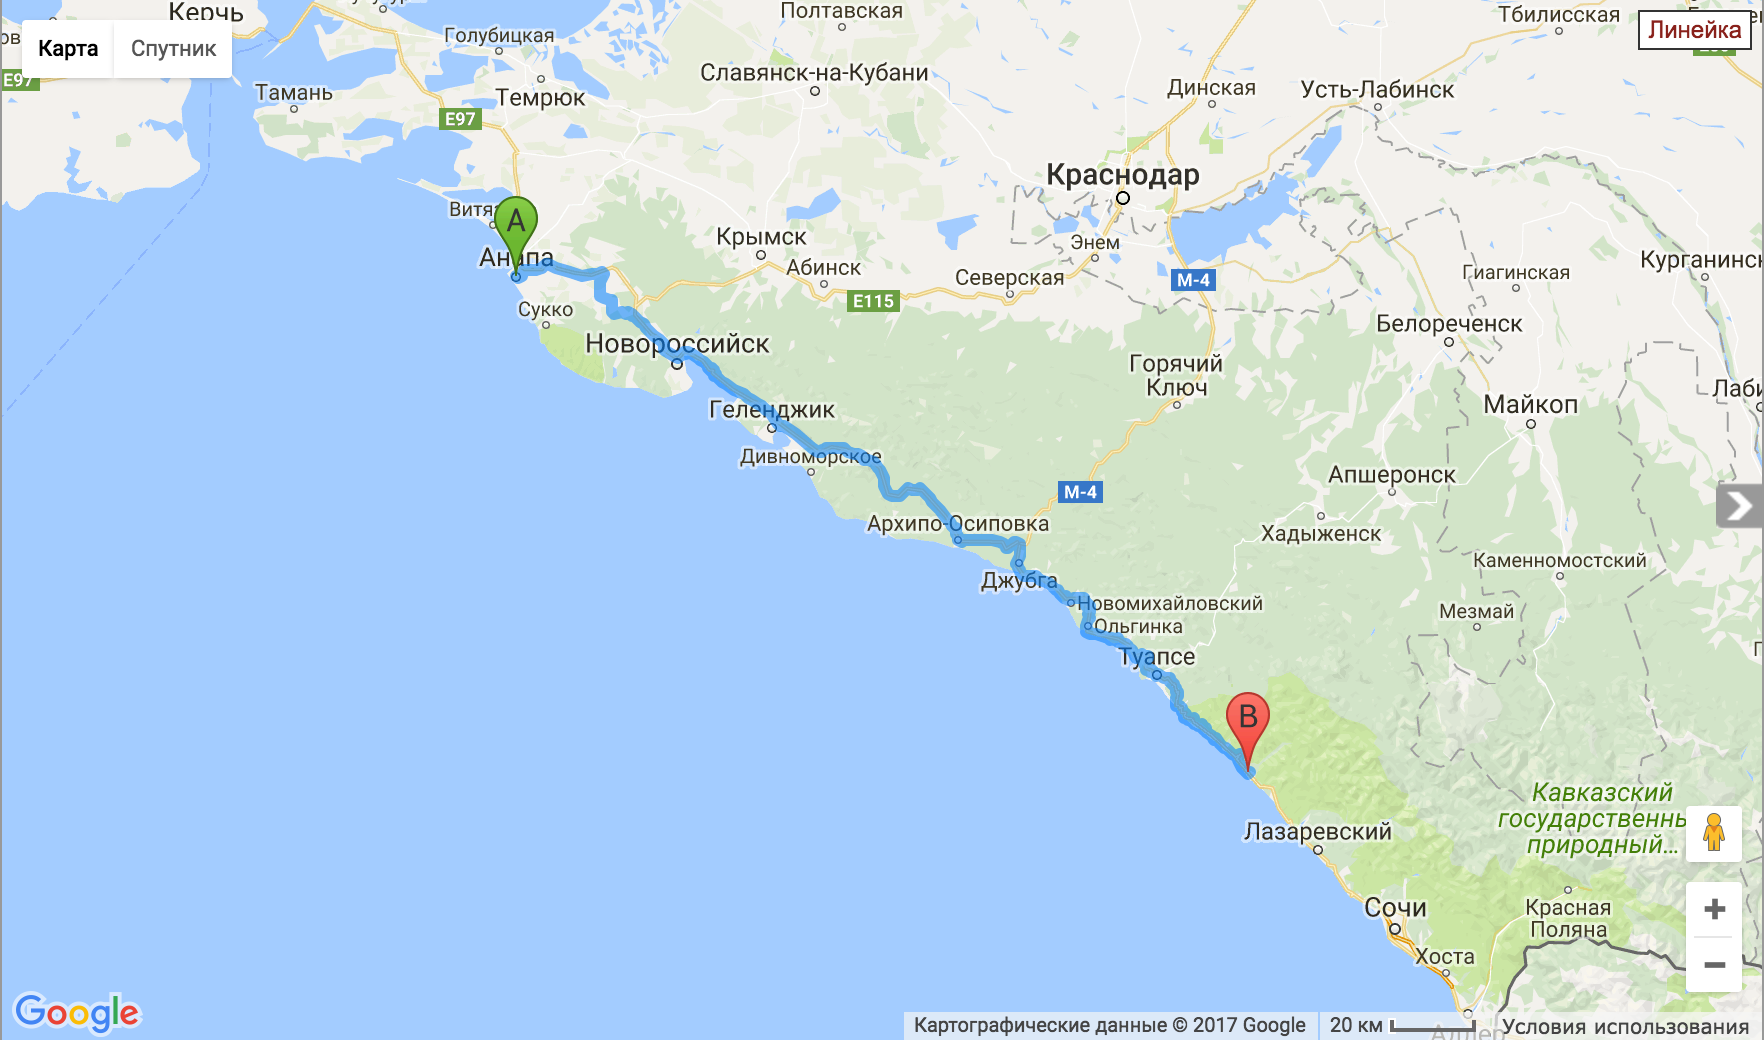 Расположение Геленджика на карте Черноморского побережья. Карта Черноморского побережья Краснодарского края от Анапы до Сочи.